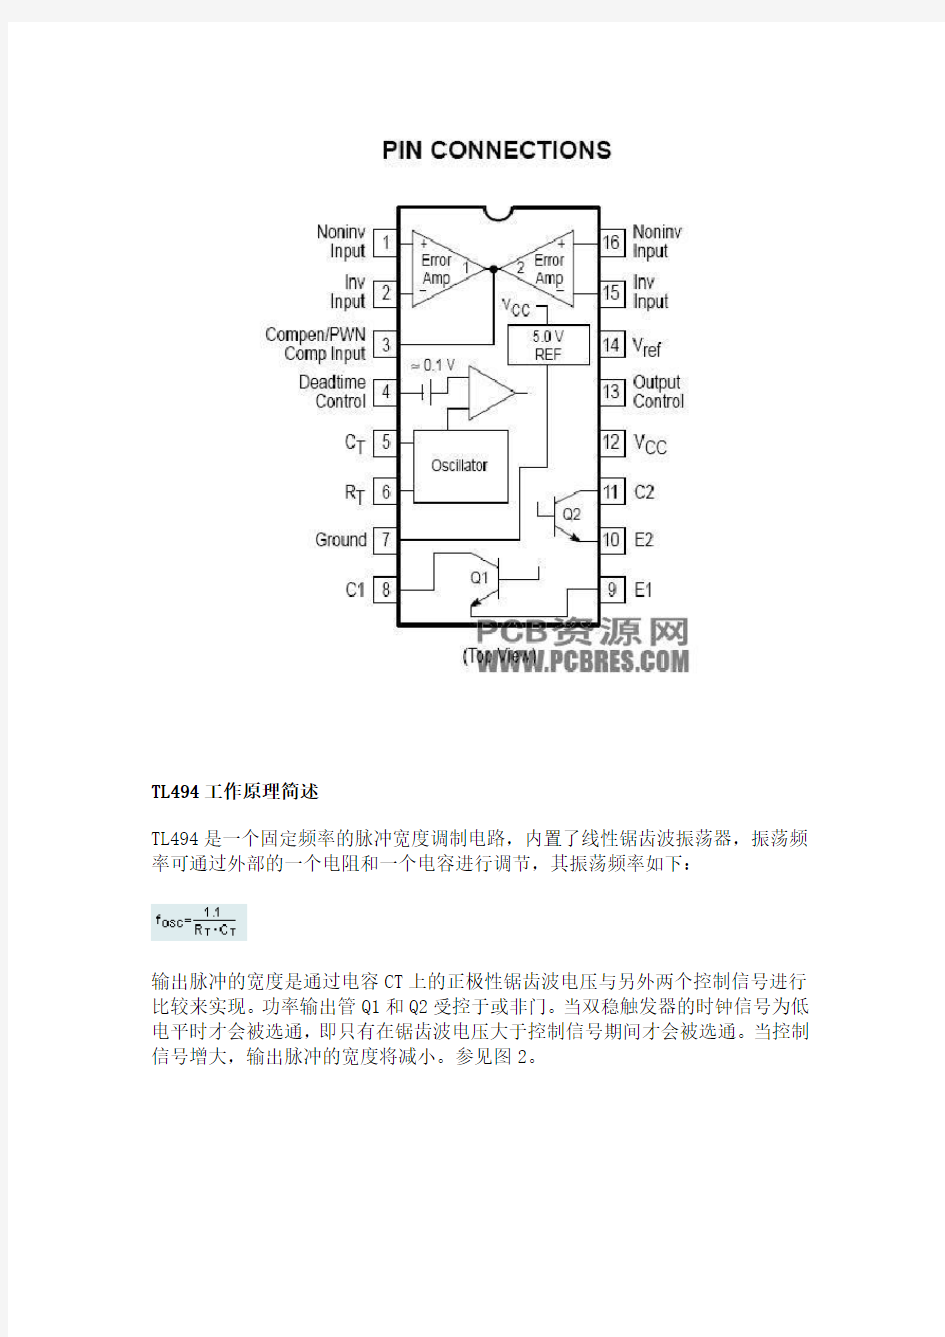 TL494中文资料及应用电路